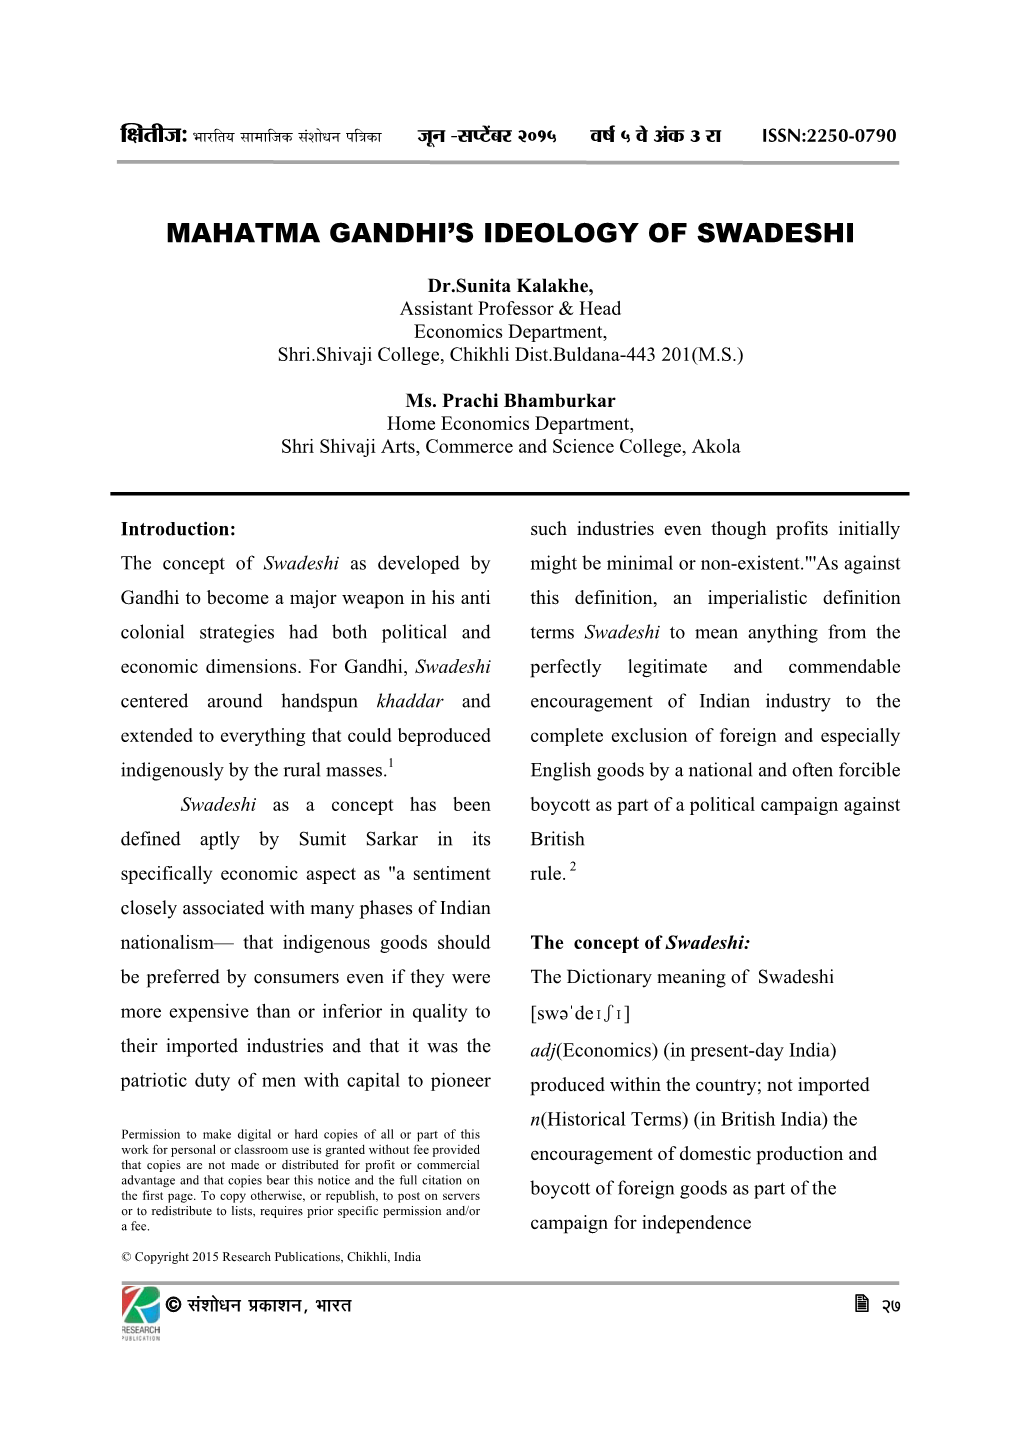 Mahatma Gandhi's Ideology of Swadeshi